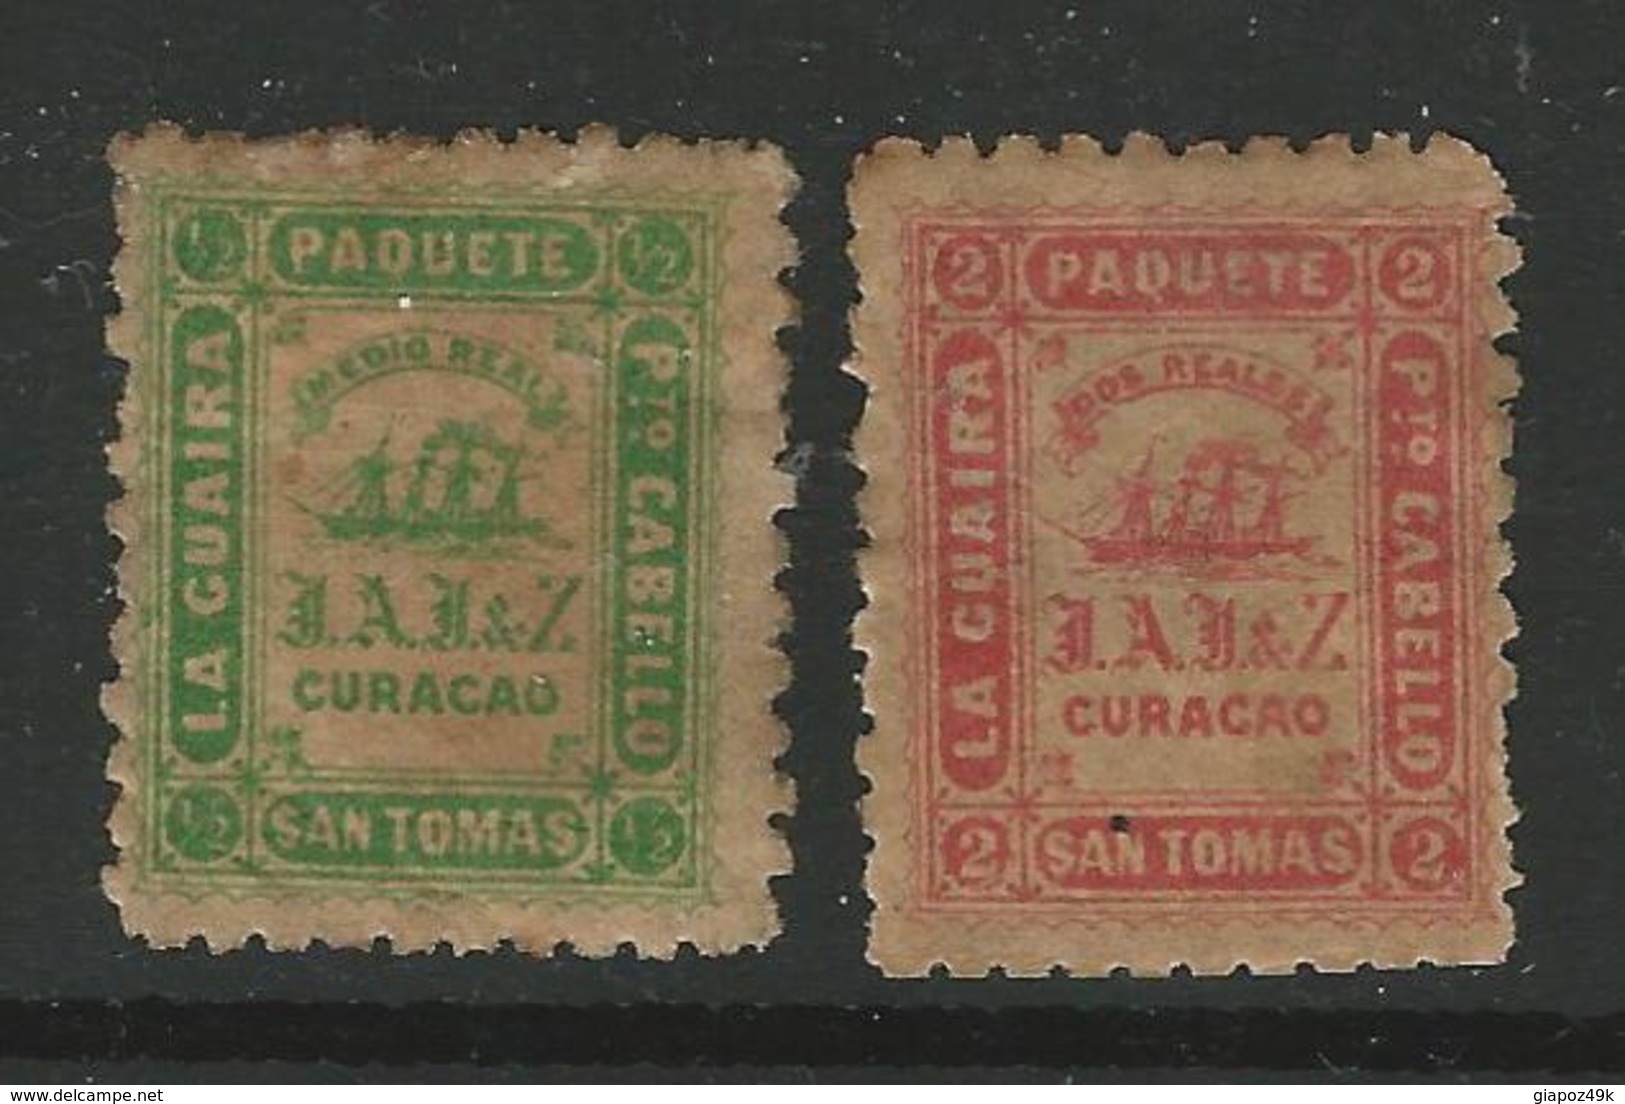 CURACAO - 1869 - SAN TOMAS - La GUAIRA - P.to CABELLO - PAQUETE  - Posta Privata * - Cat.? € - L 1647 G - Curacao, Netherlands Antilles, Aruba